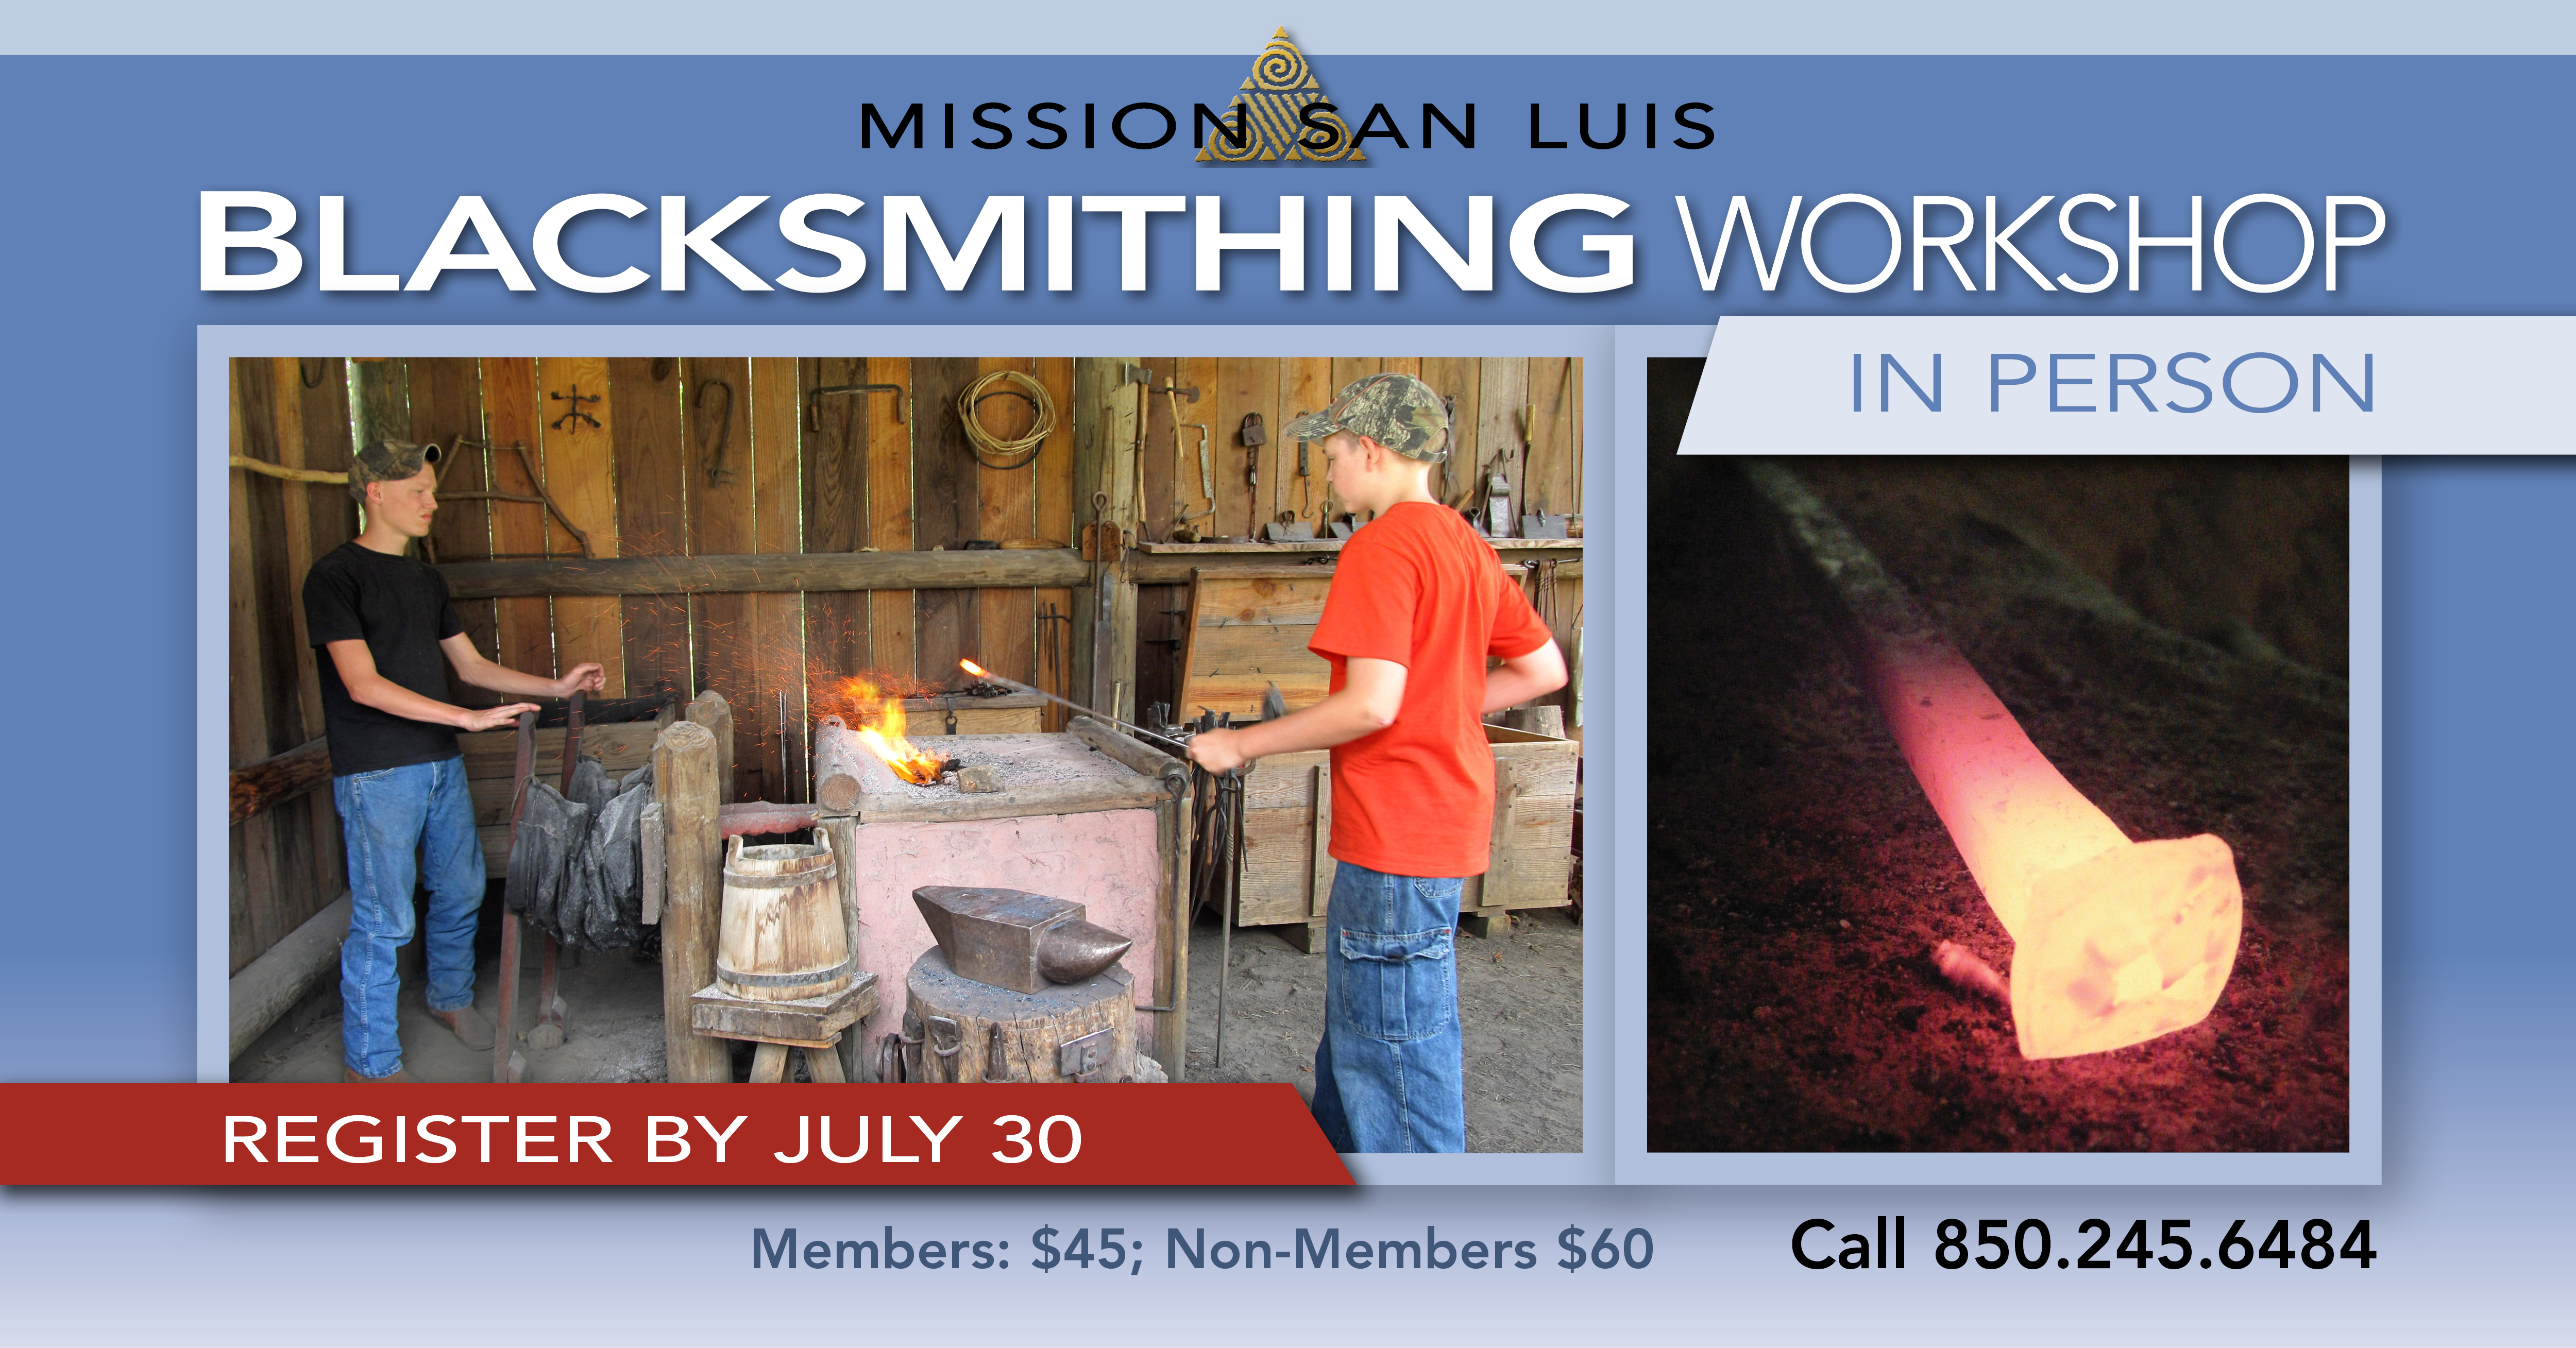 Beginner Blacksmithing Workshop